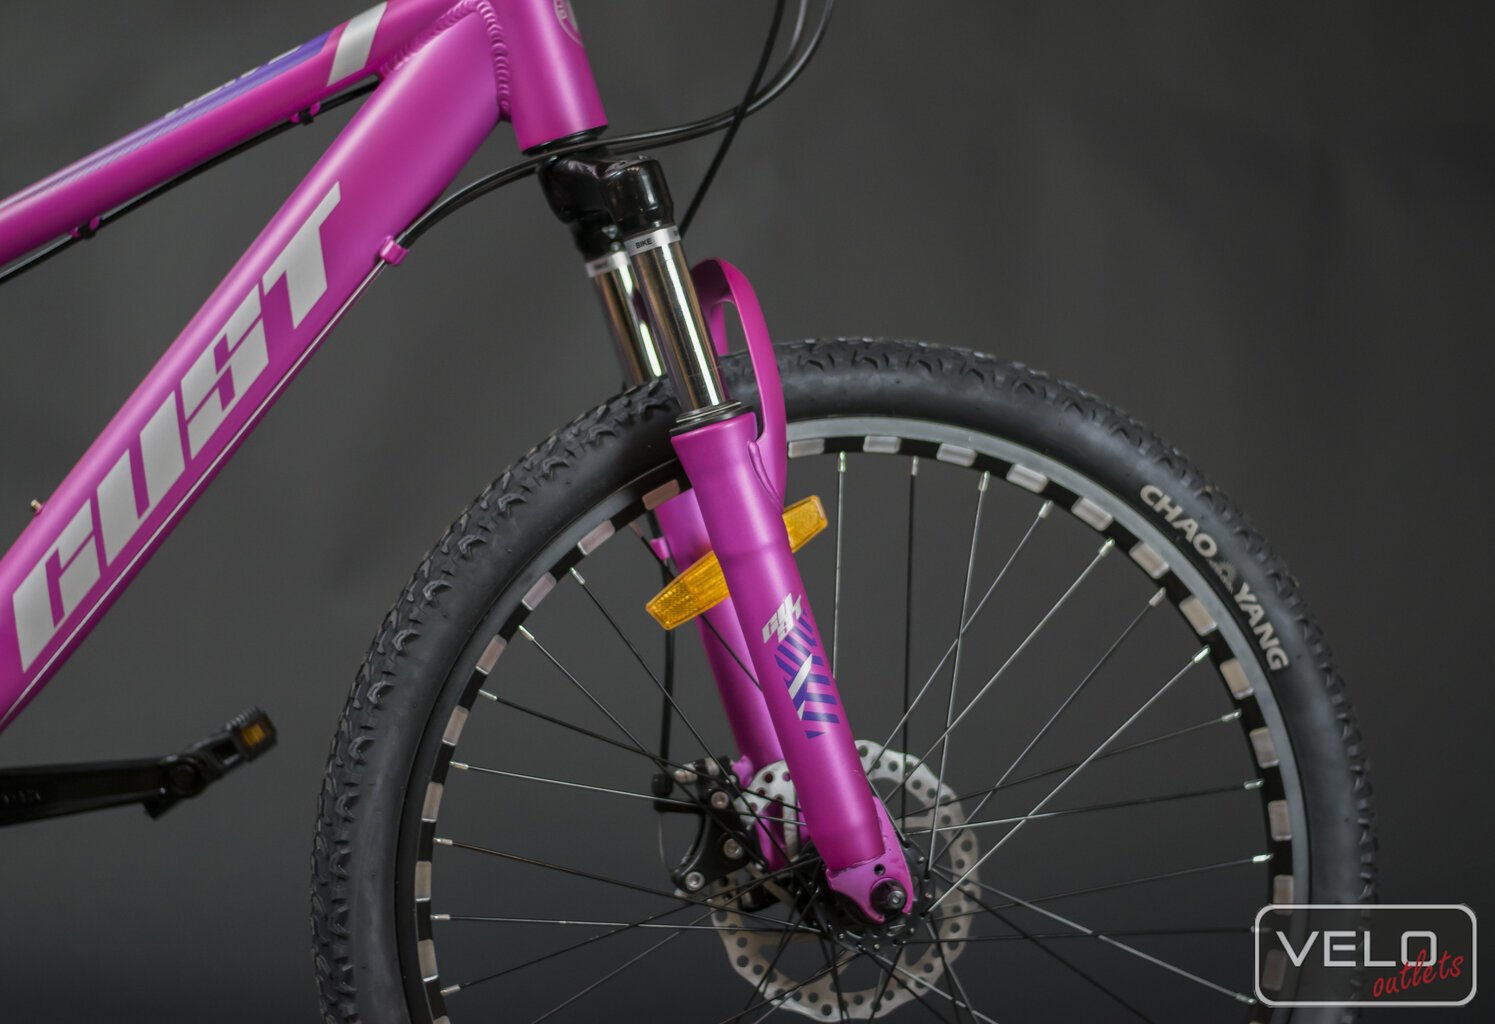 Vaikiškas dviratis Gust Wave 24cll, rožinis kaina ir informacija | Dviračiai | pigu.lt